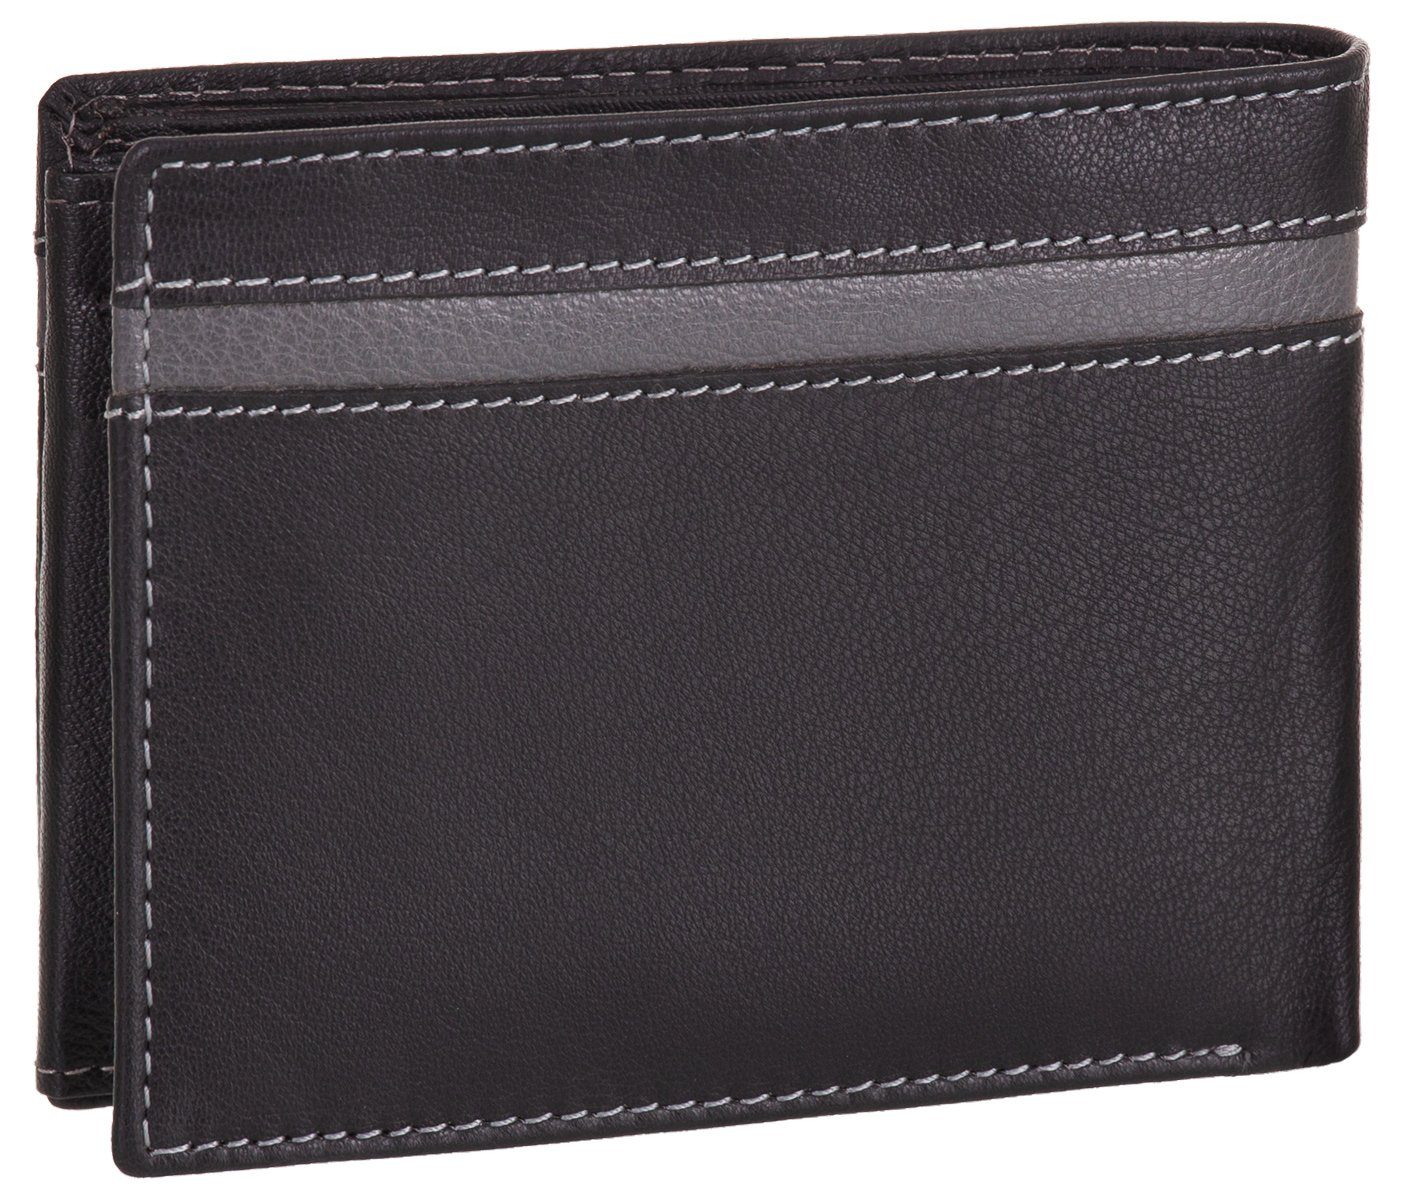 J.Jones Geldbörse, Geldbörse RFID-Schutz Münzfach schwarz-grau Geldbeutel Echt Leder mit Portemonnaie faltbar